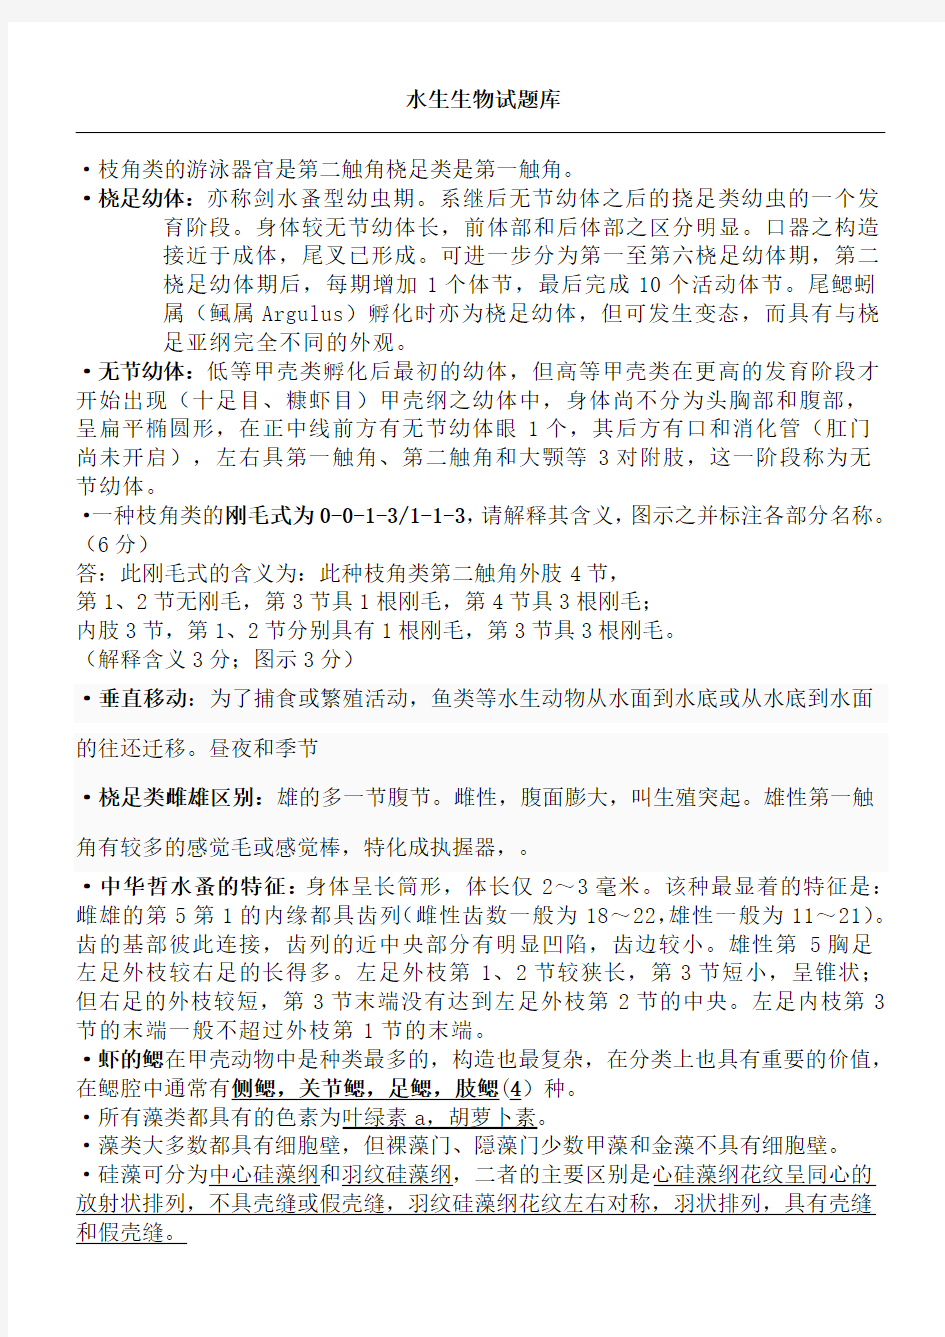 上海海洋大学水生生物学试题库完整版(含整理参考答案)